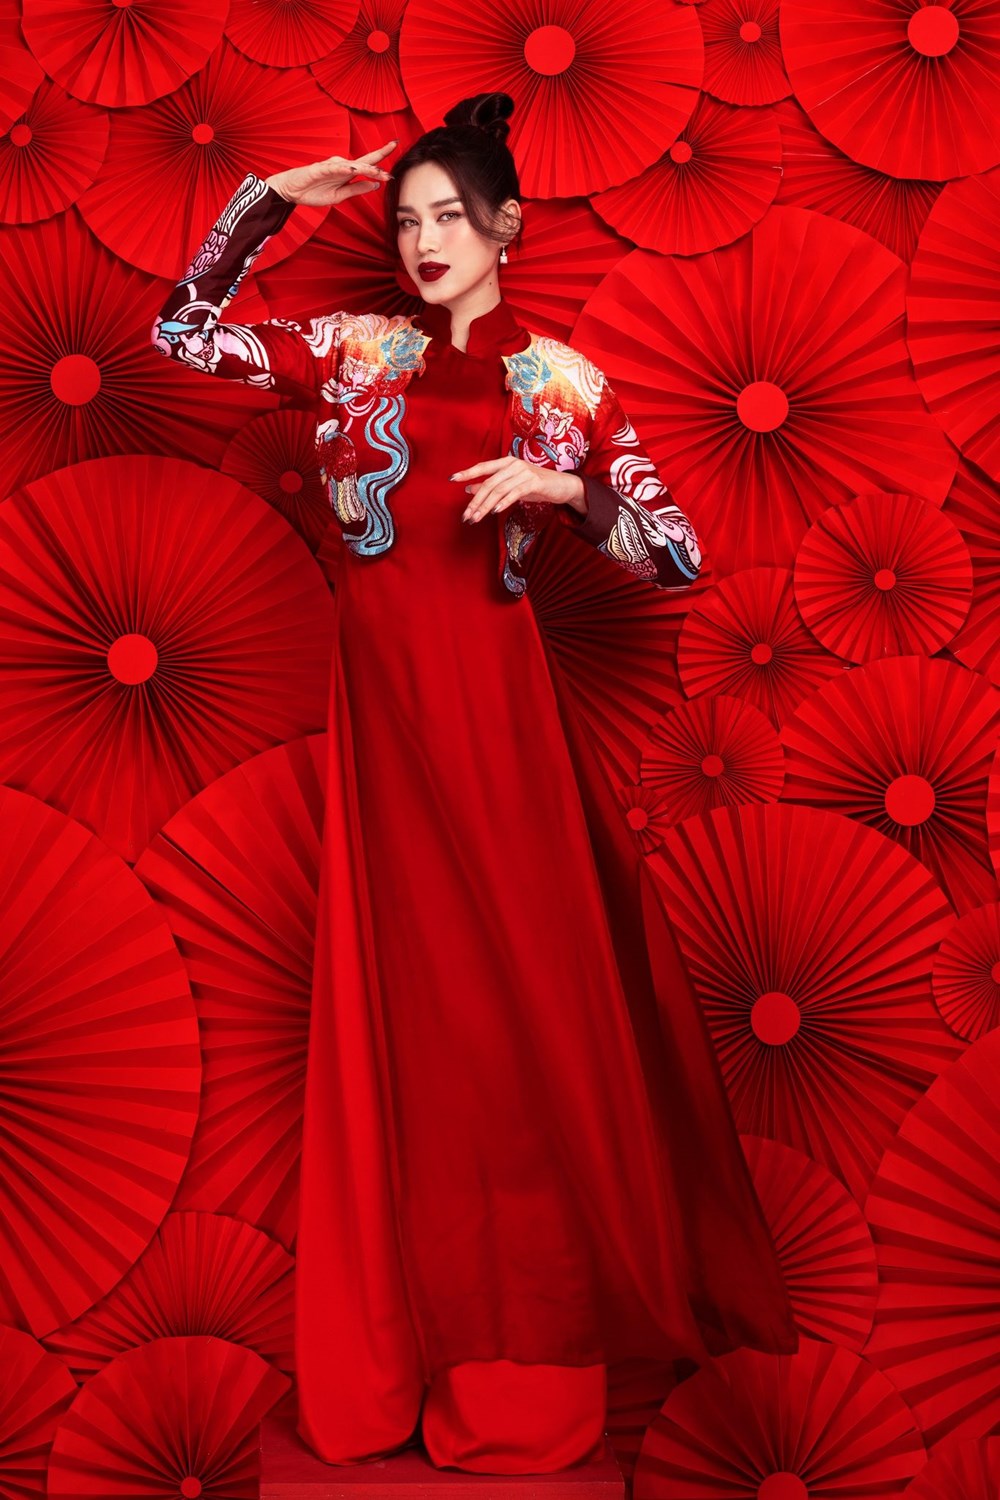 Hoa hậu Đỗ Hà diện yếm đỏ, khoe lưng trần gợi cảm trong bộ ảnh Tết - ảnh 6